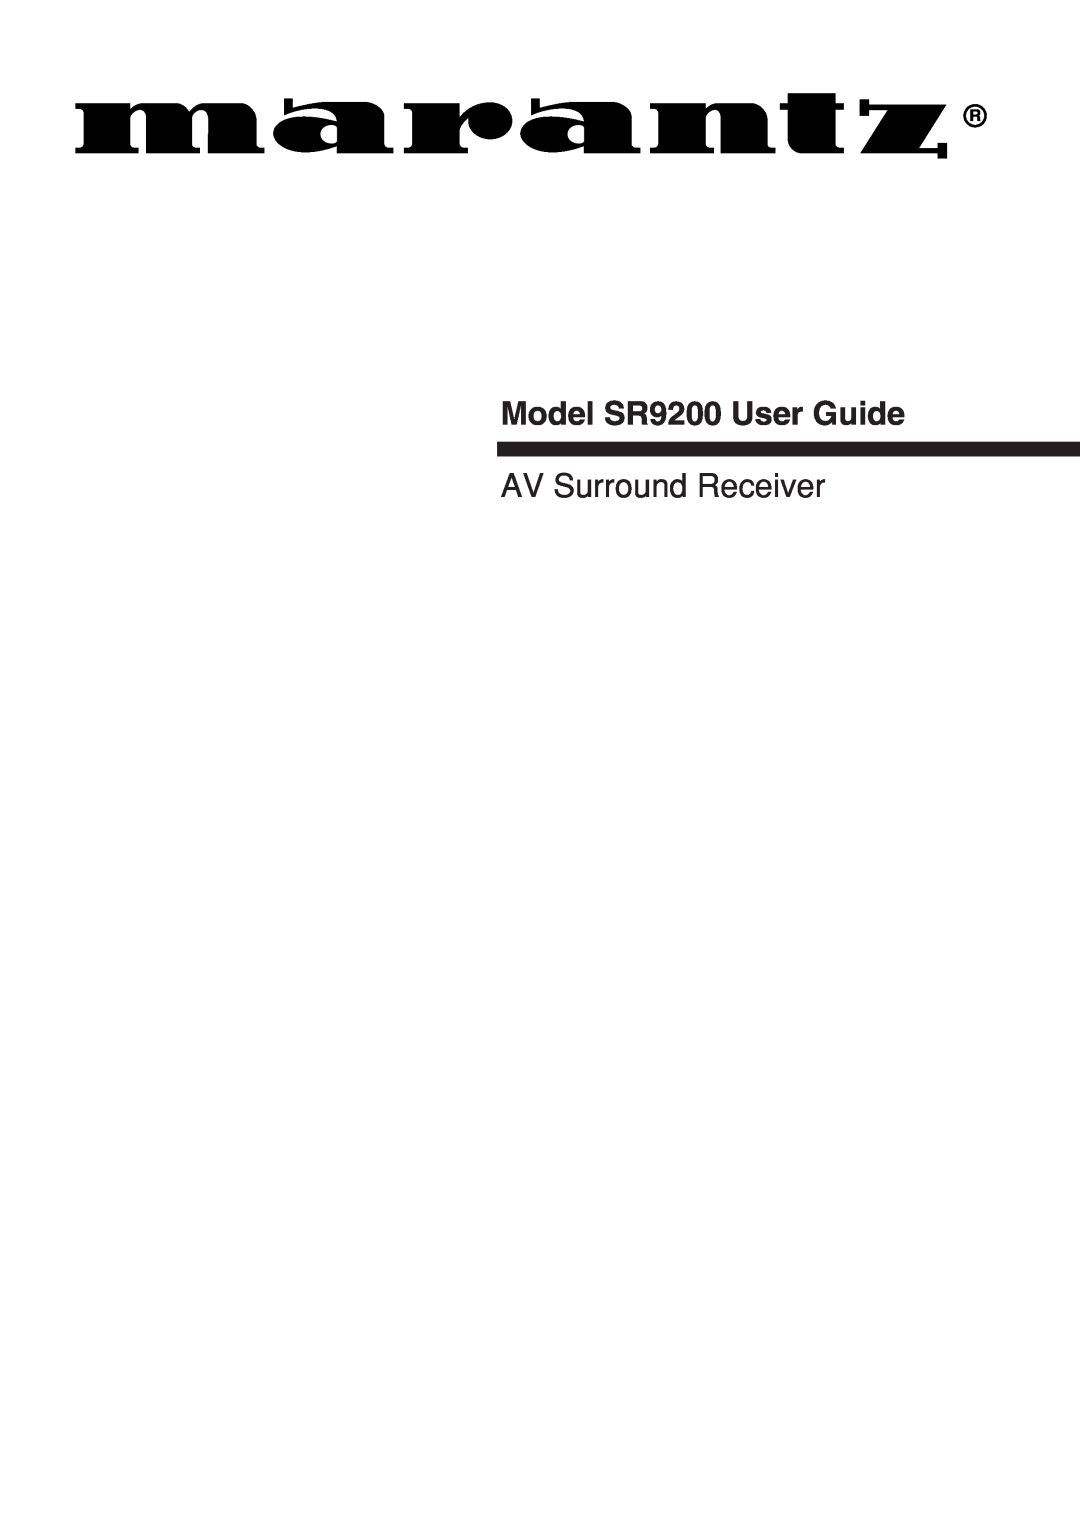 Marantz manual Model SR9200 User Guide, AV Surround Receiver 